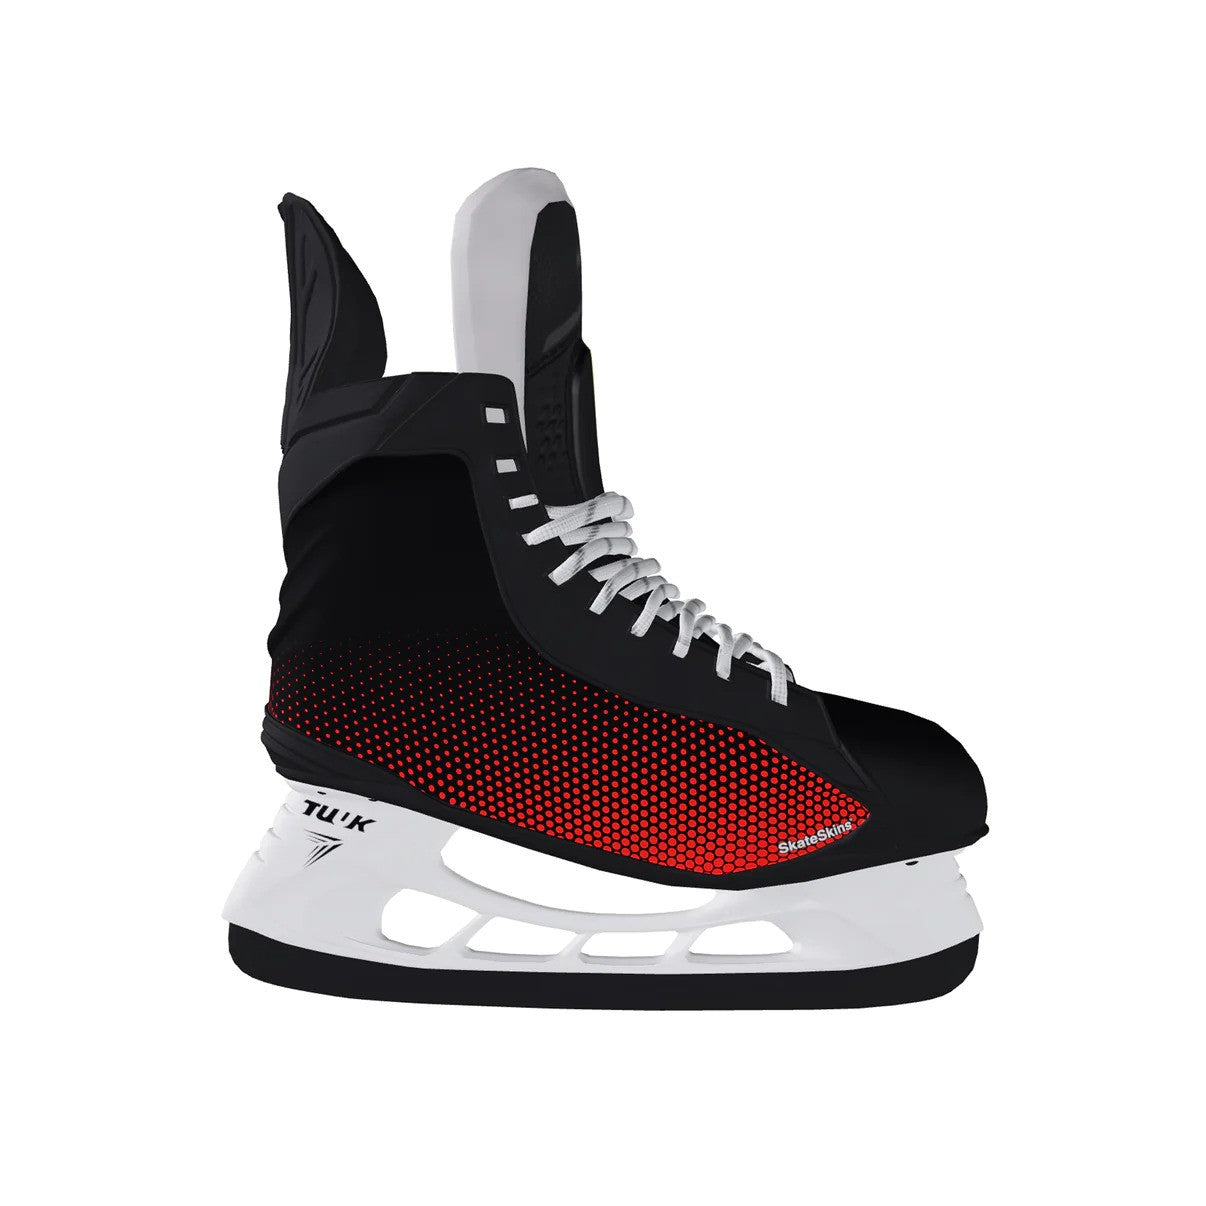 SkateSkins - Hockey Skate Customization